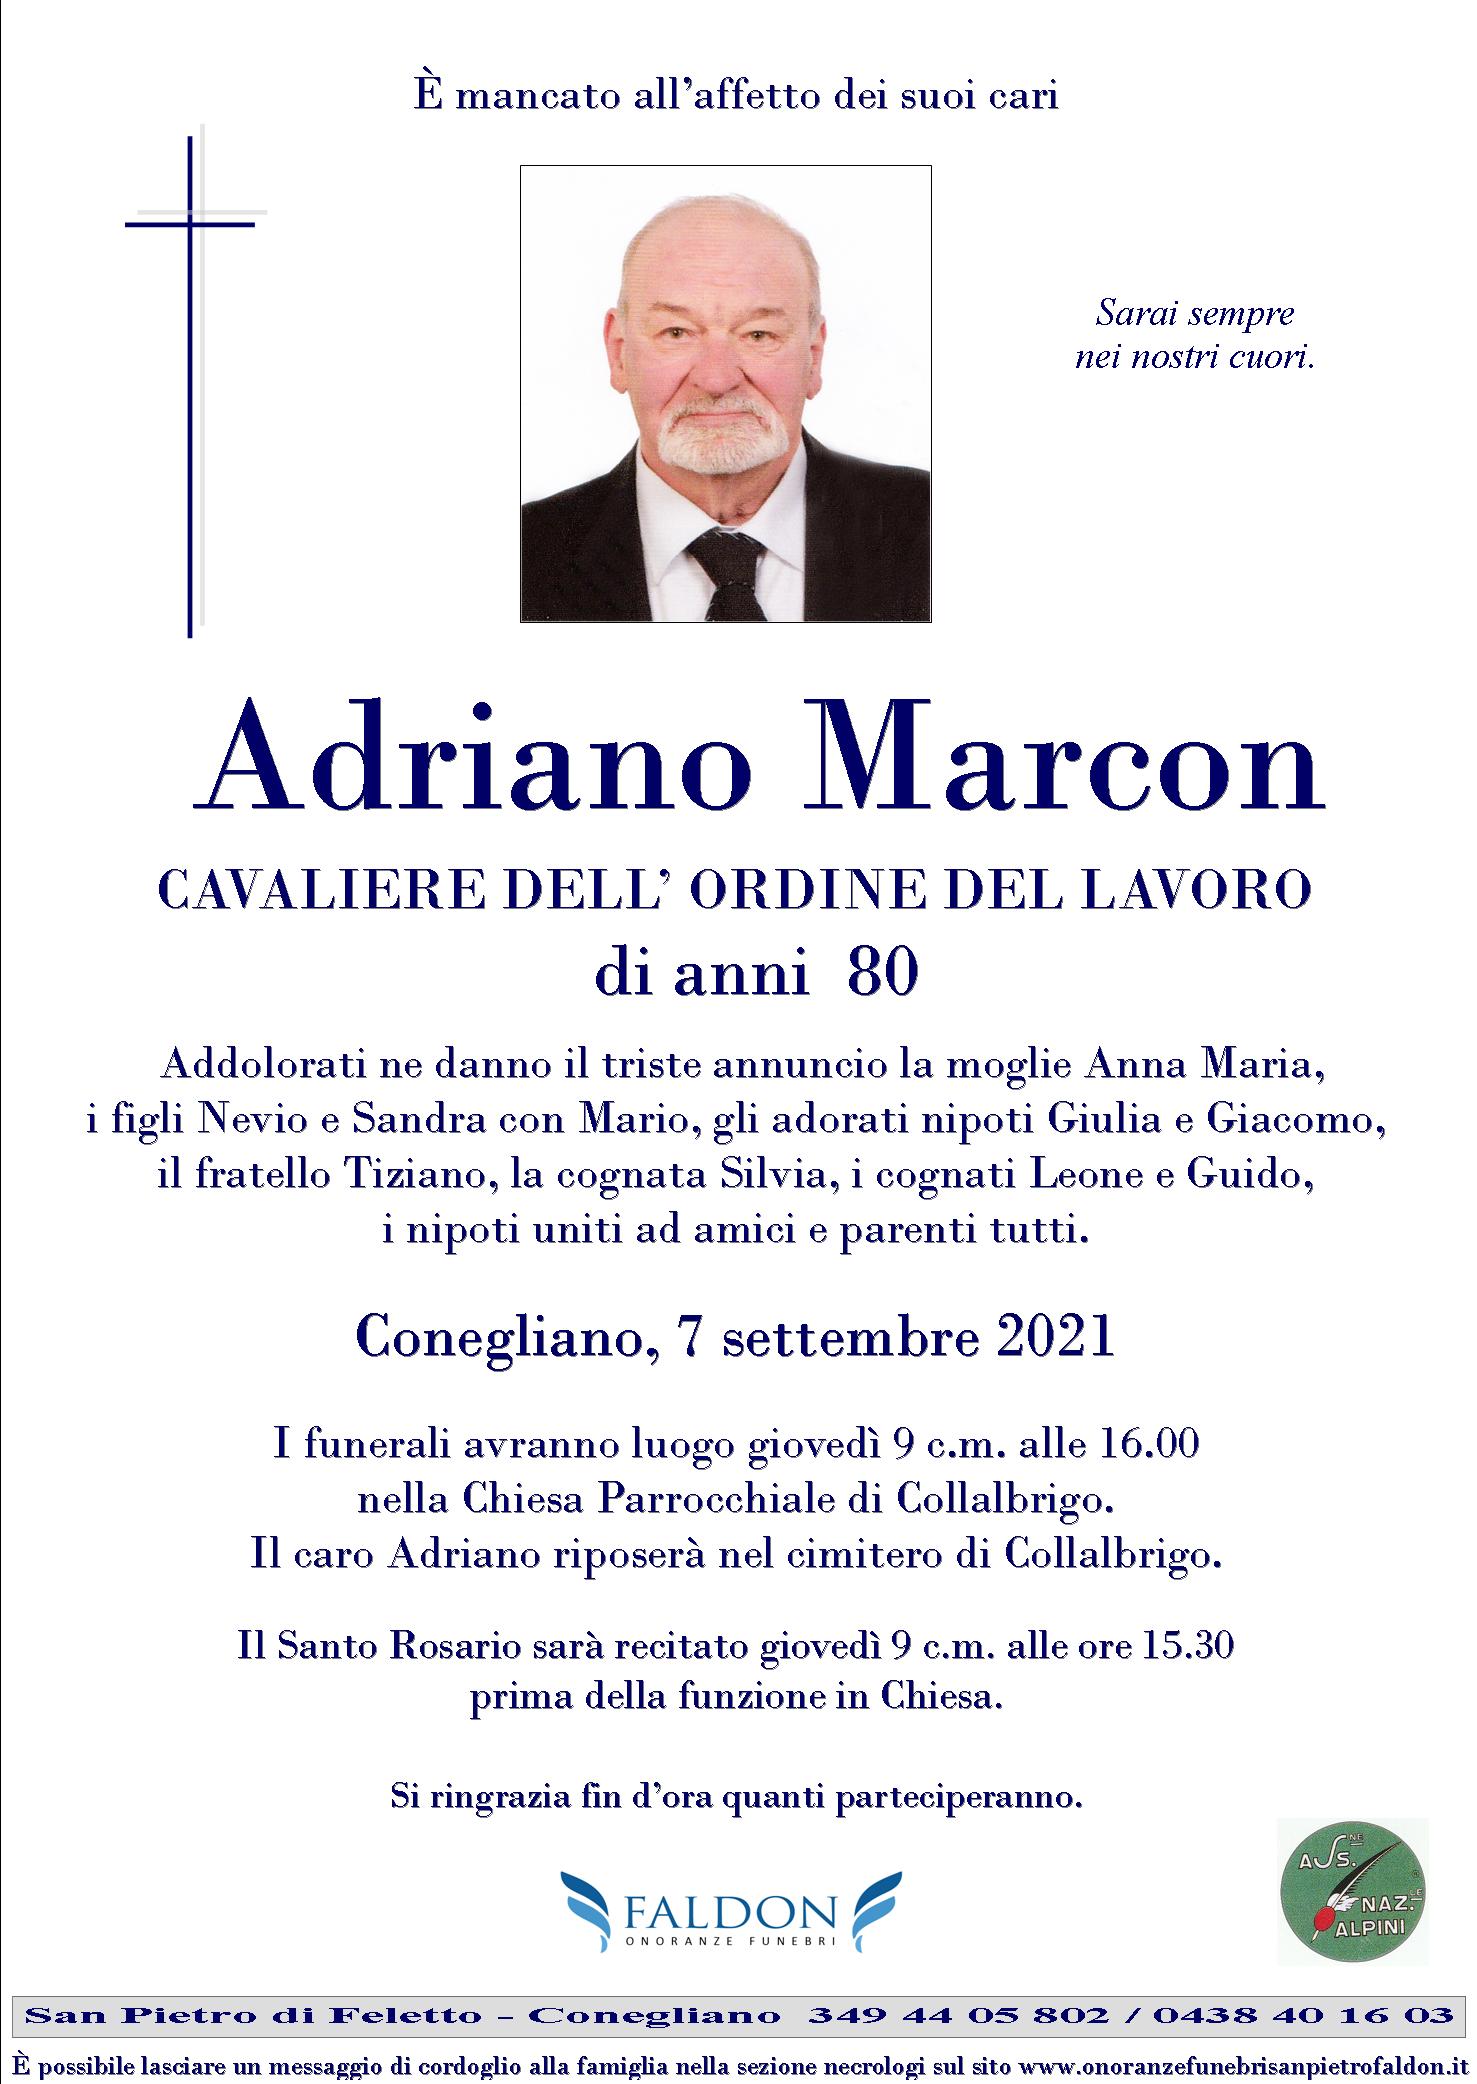 Adriano Marcon